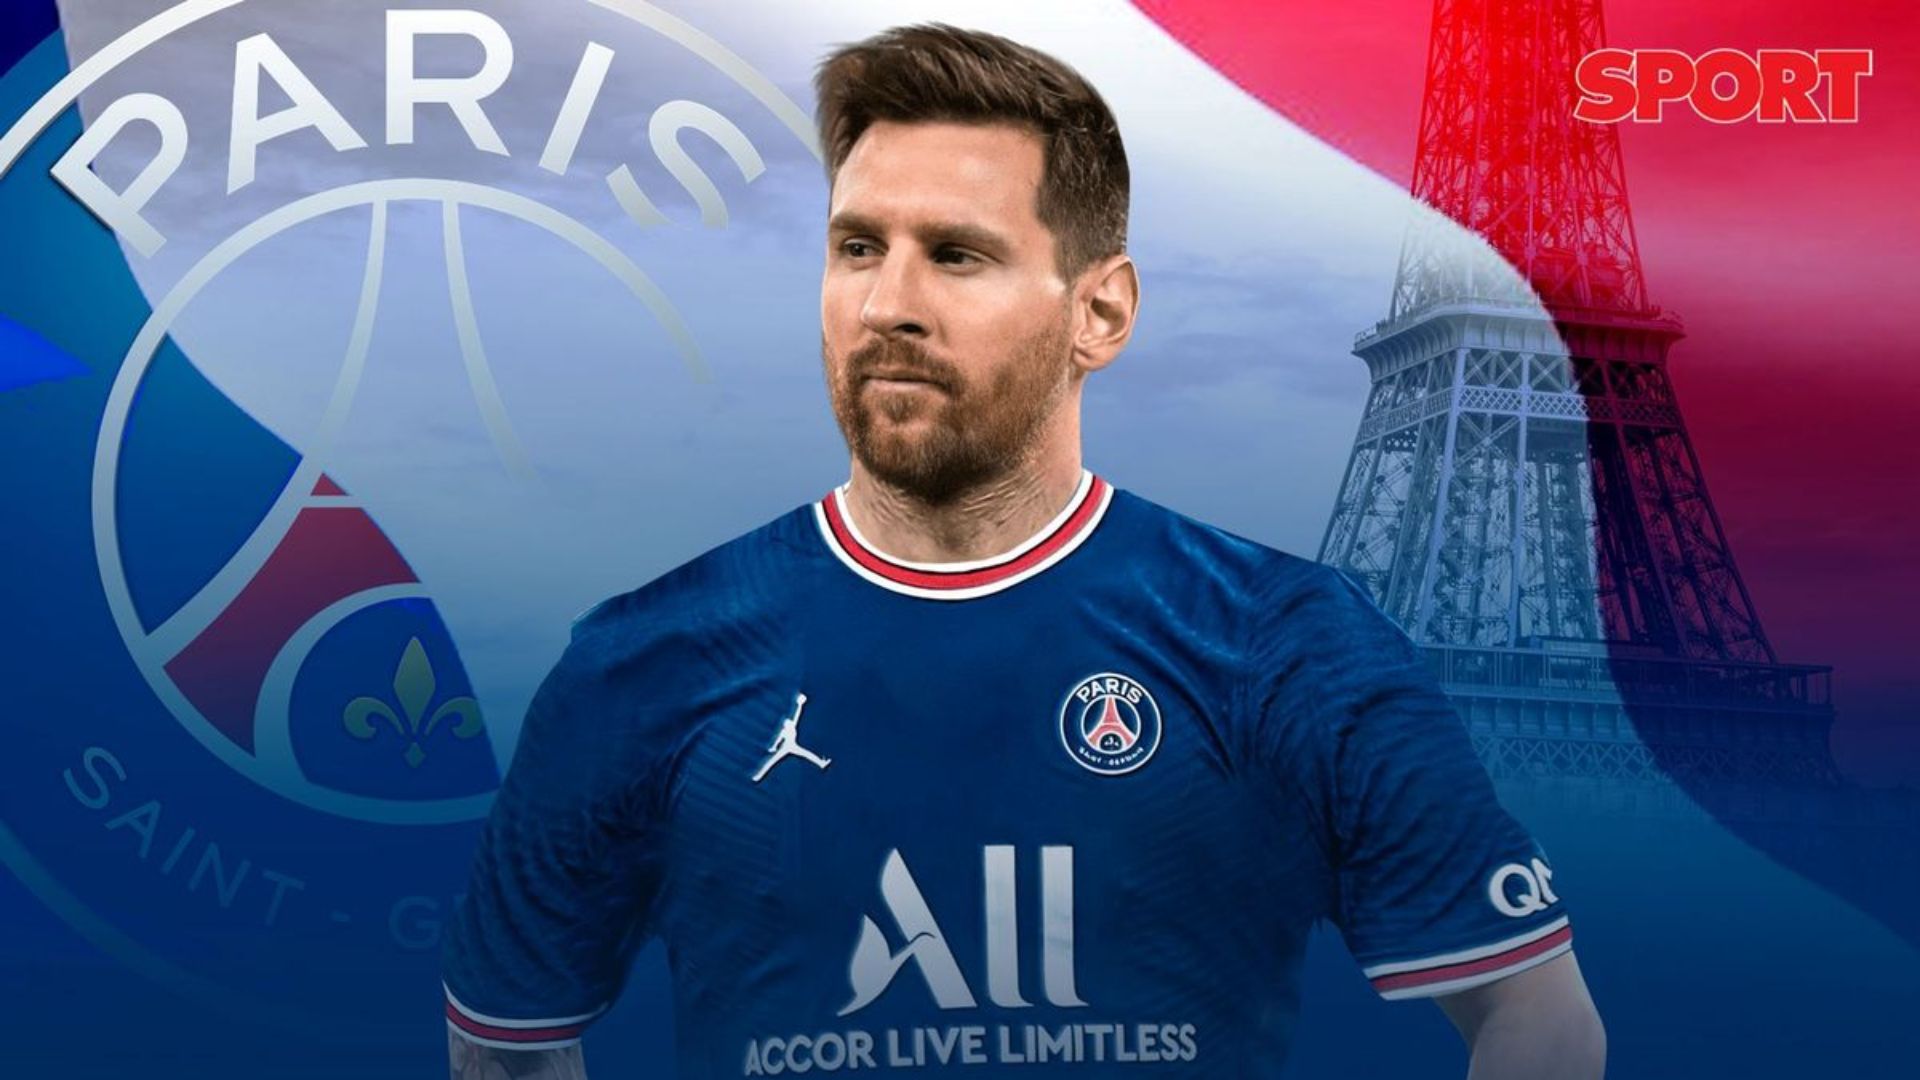 Hãy tải xuống miễn phí Messi PSG Wallpapers 2021 Top 50 Lionel Messi để cập nhật những hình nền bóng đá đẹp nhất, mới nhất. Tận hưởng niềm hạnh phúc khi nhìn thấy hình ảnh Lionel Messi trên màn hình điện thoại của bạn, cùng tận hưởng những thàng công rực rỡ của Paris Saint-Germain F.C. trên sân nhà Parc des Princes.